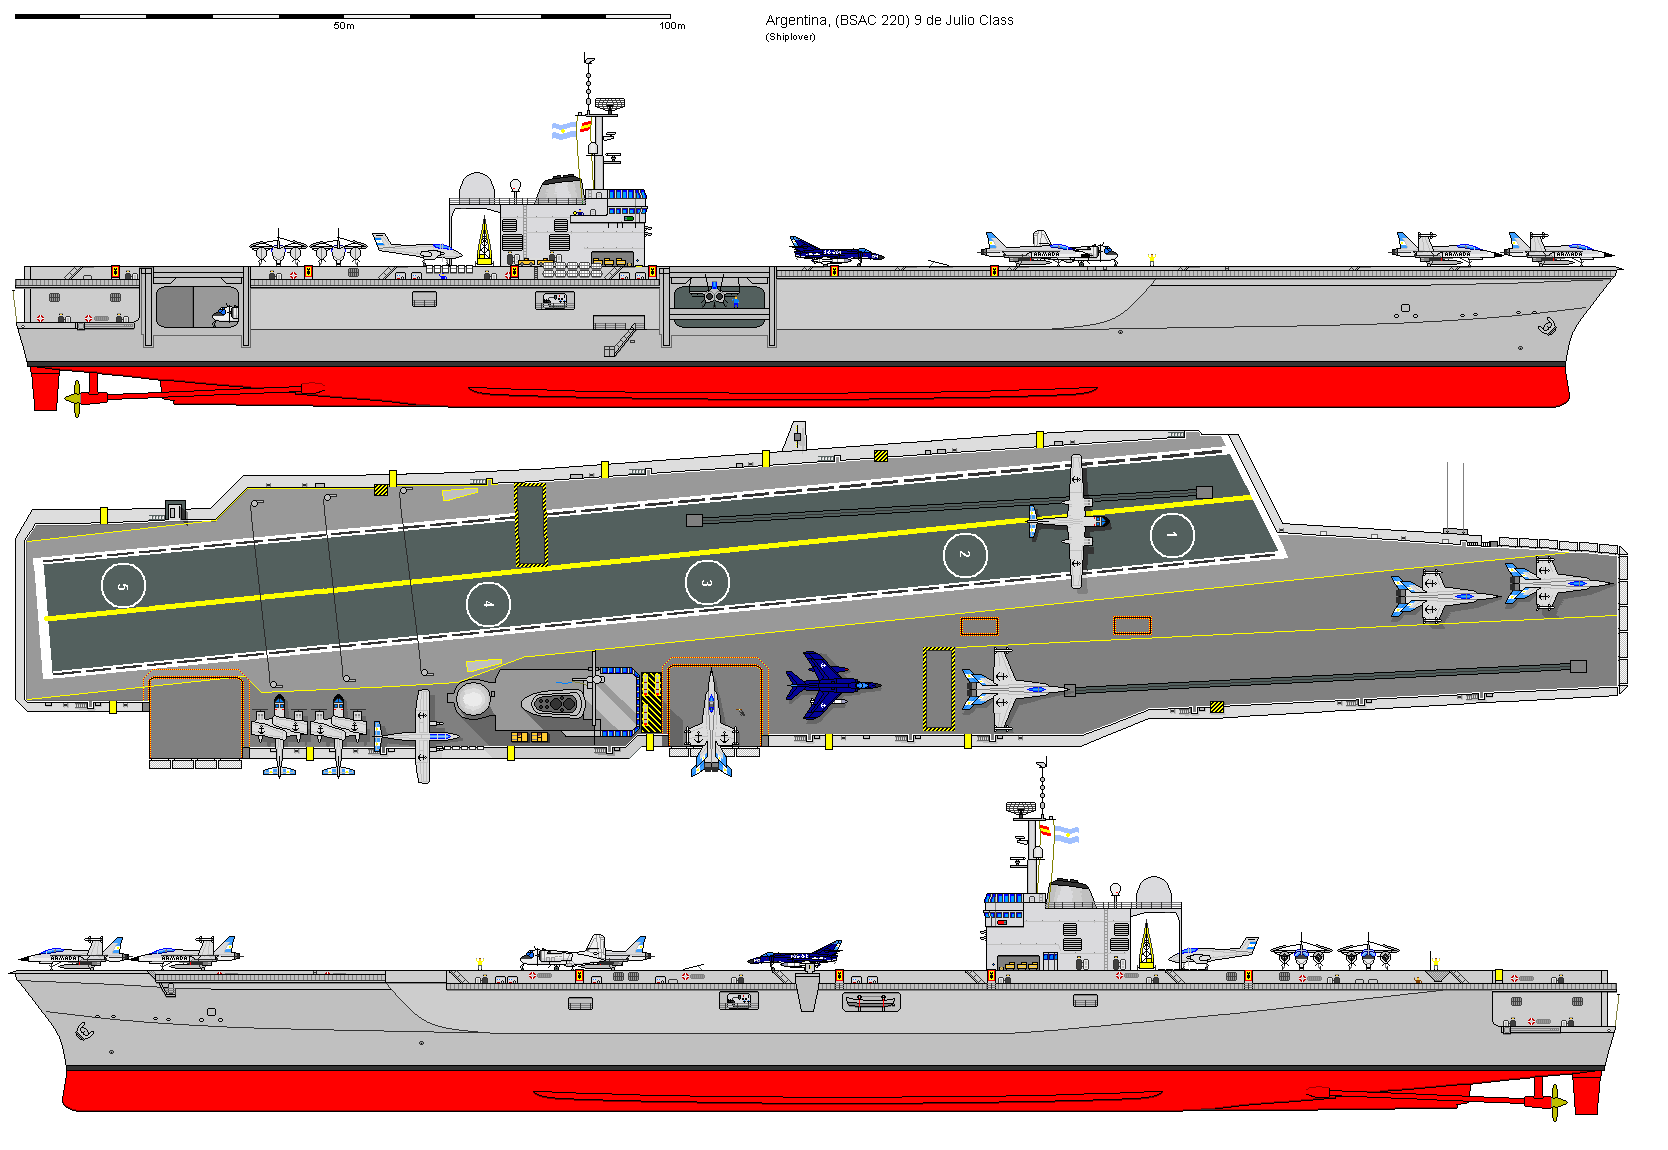 sac-220航母三视图,其舰载机为"超军旗"大黄蜂"和"鹰眼.